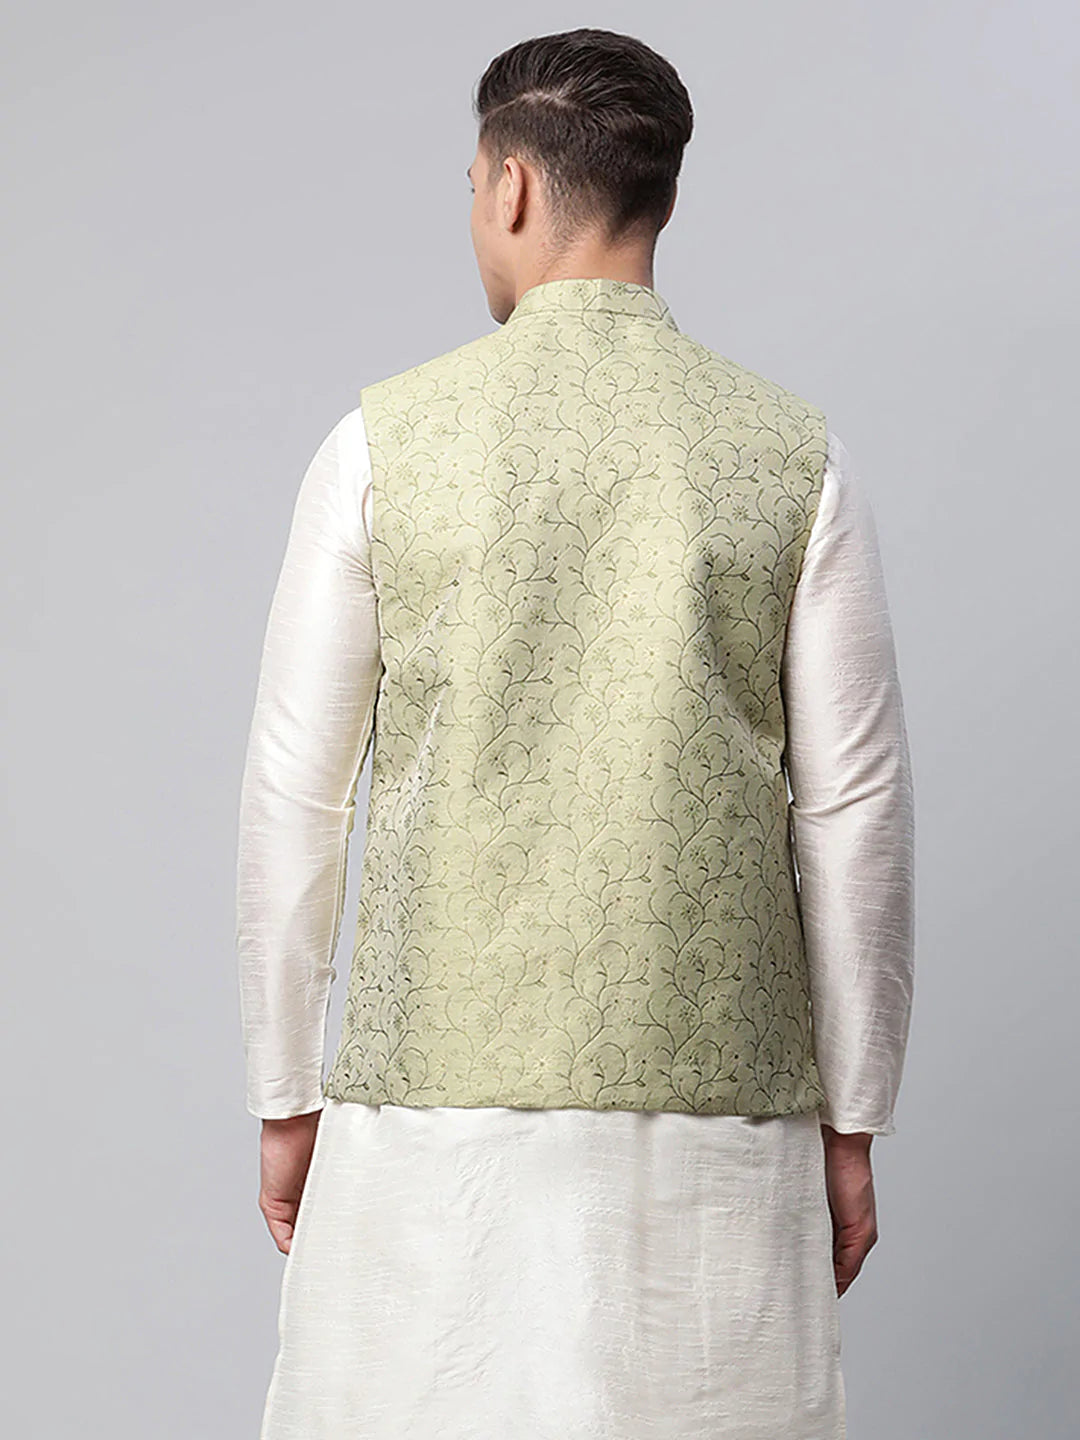 Men's Pista Green Printed textured Nehru Jacket( JOWC 4039 Pista )